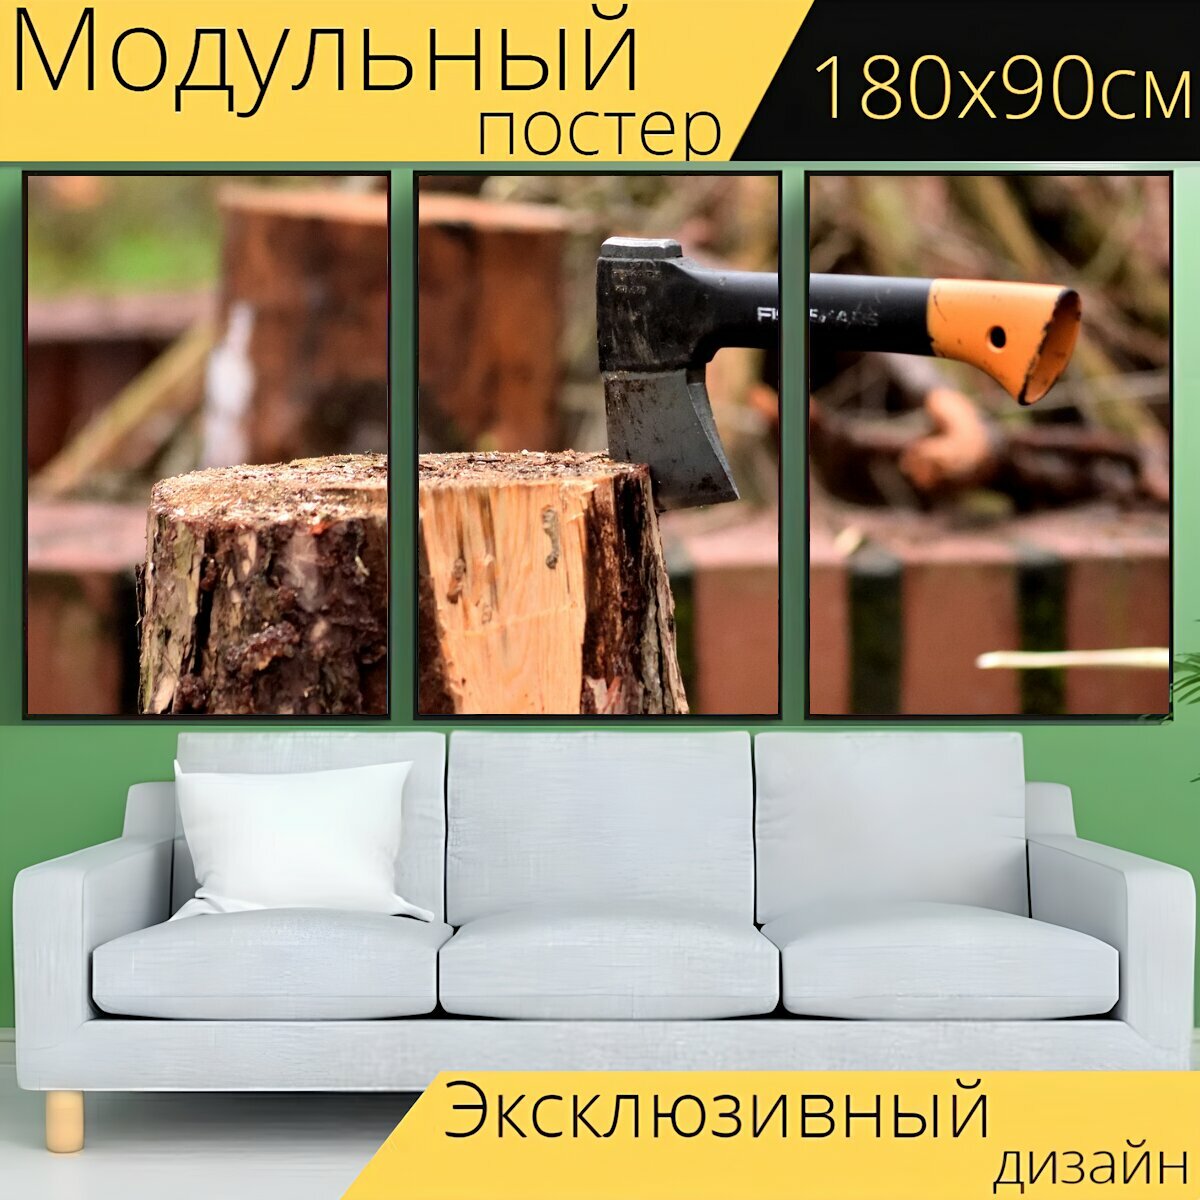 Модульный постер "Топор, лесоруб, древесина" 180 x 90 см. для интерьера